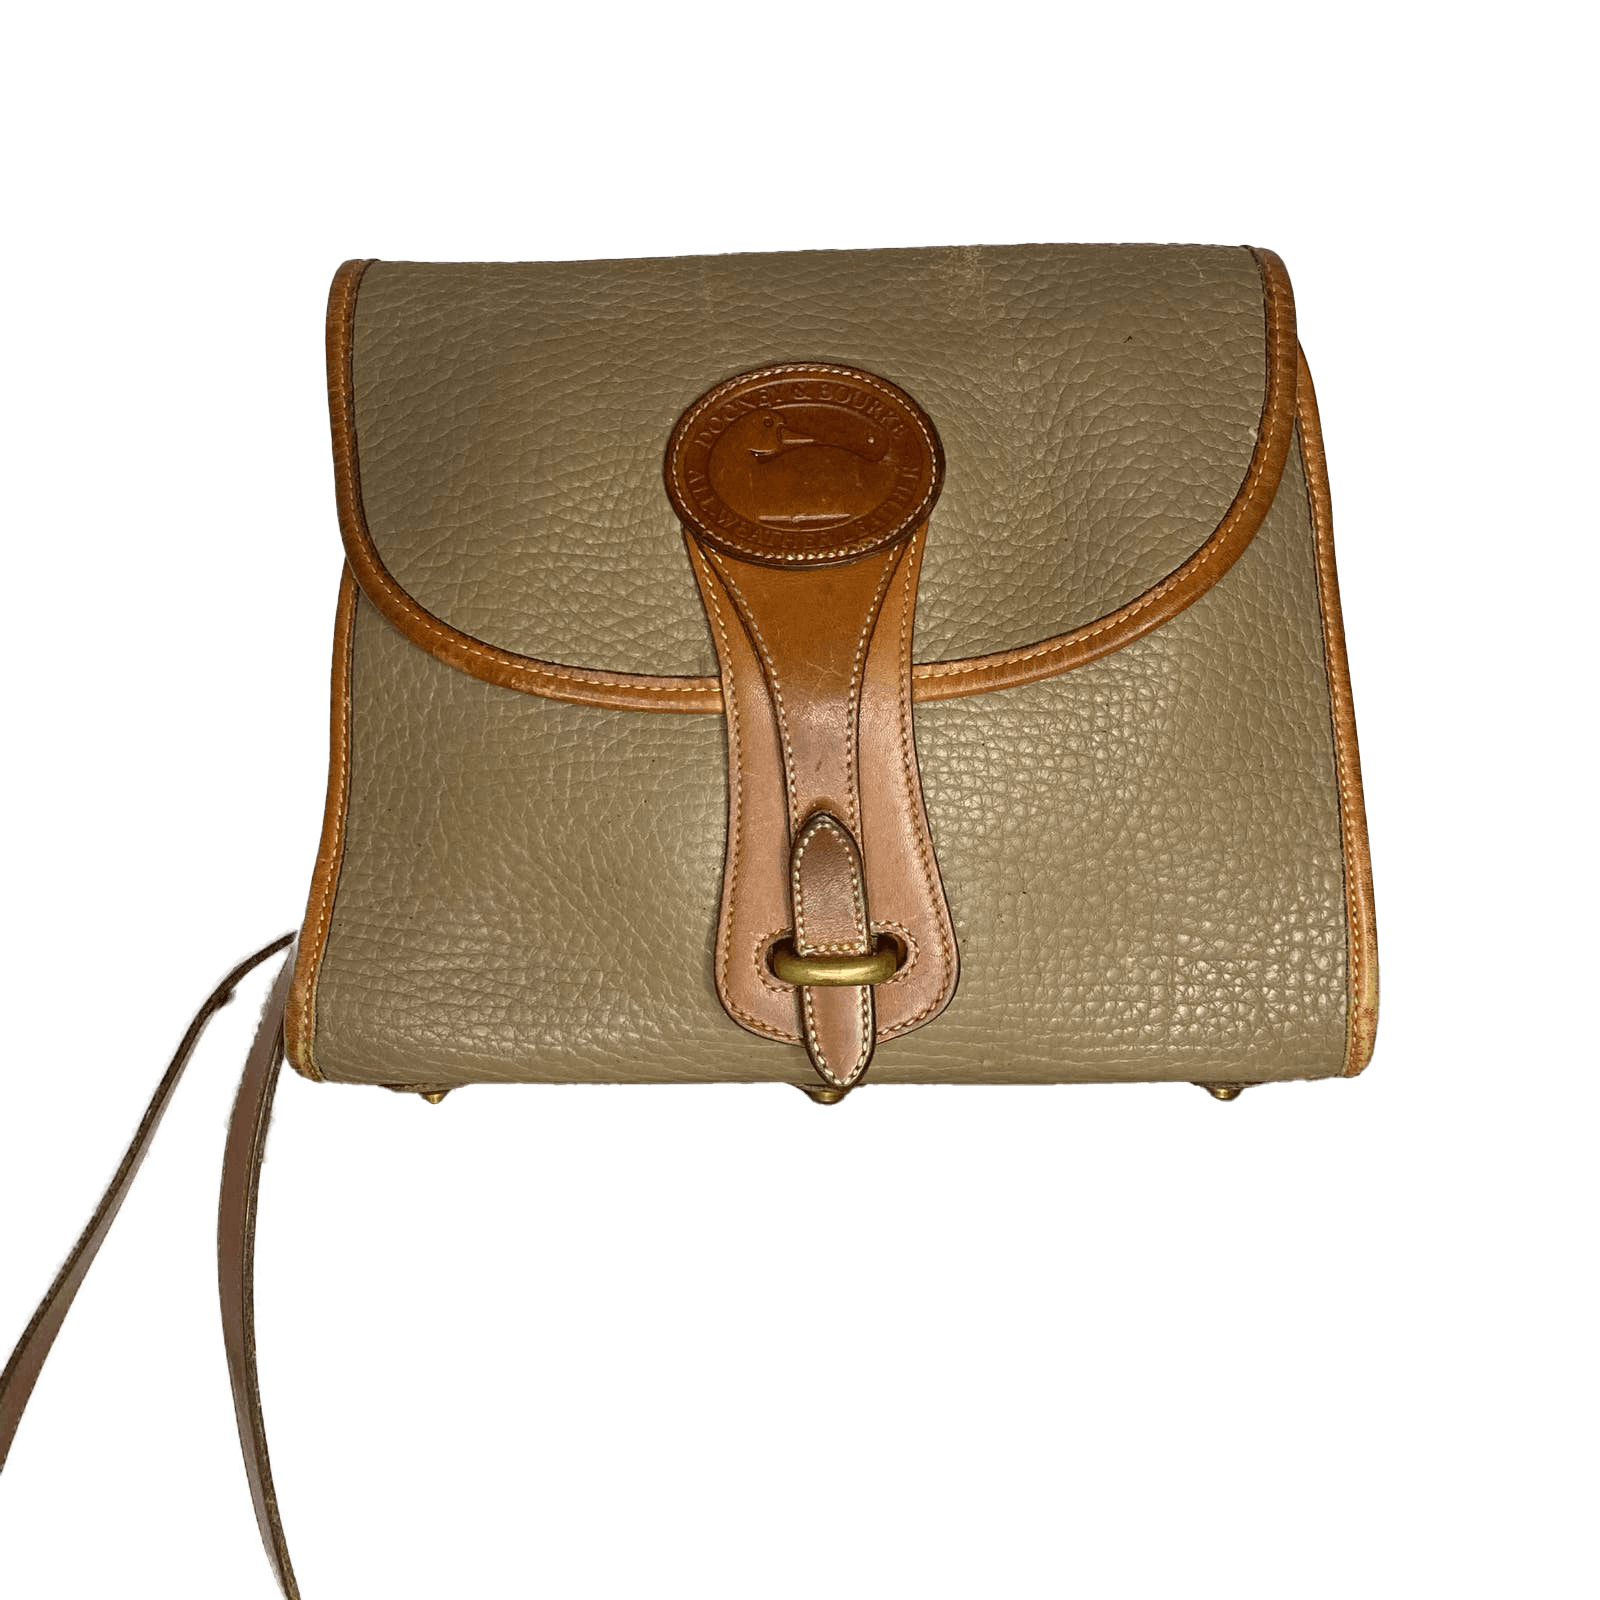 Vintage Dooney and Bourke All-Weather Leather R25 Medium Essex Shoulder Bag